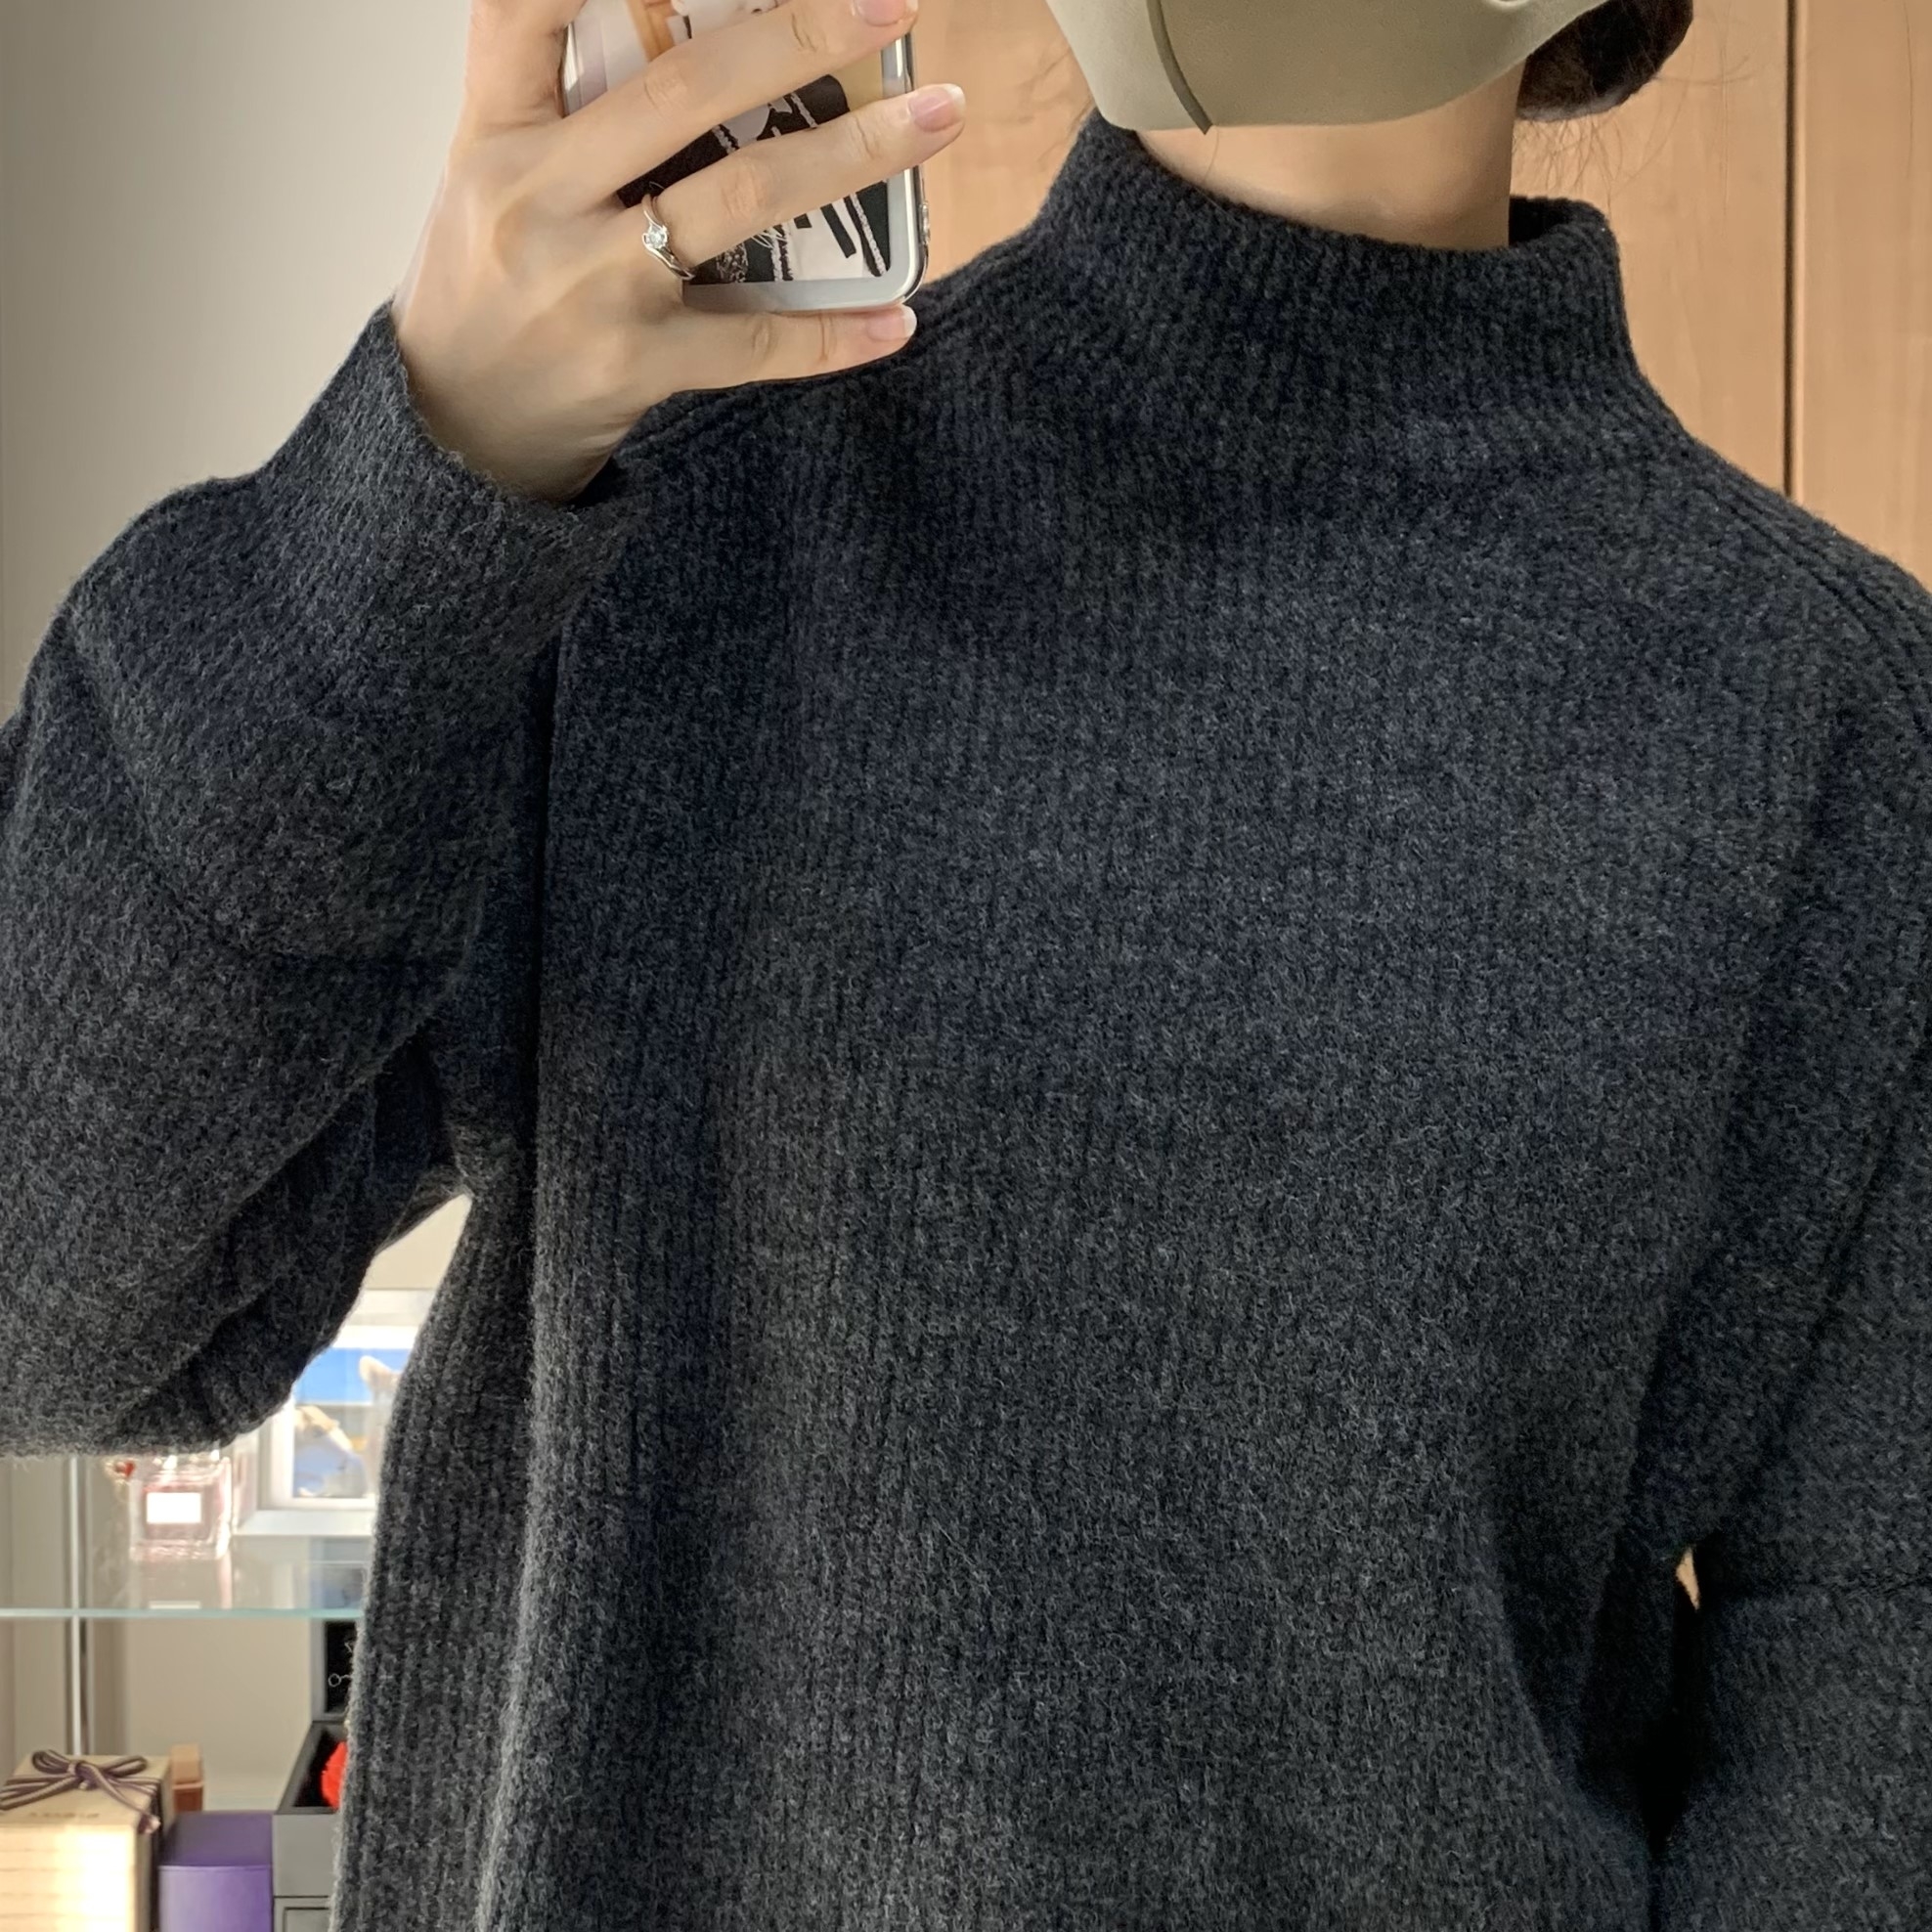 GU（ジーユー）のおすすめのレディースアイテム「パフィータッチオーバーサイズハイネックセーター（長袖）」